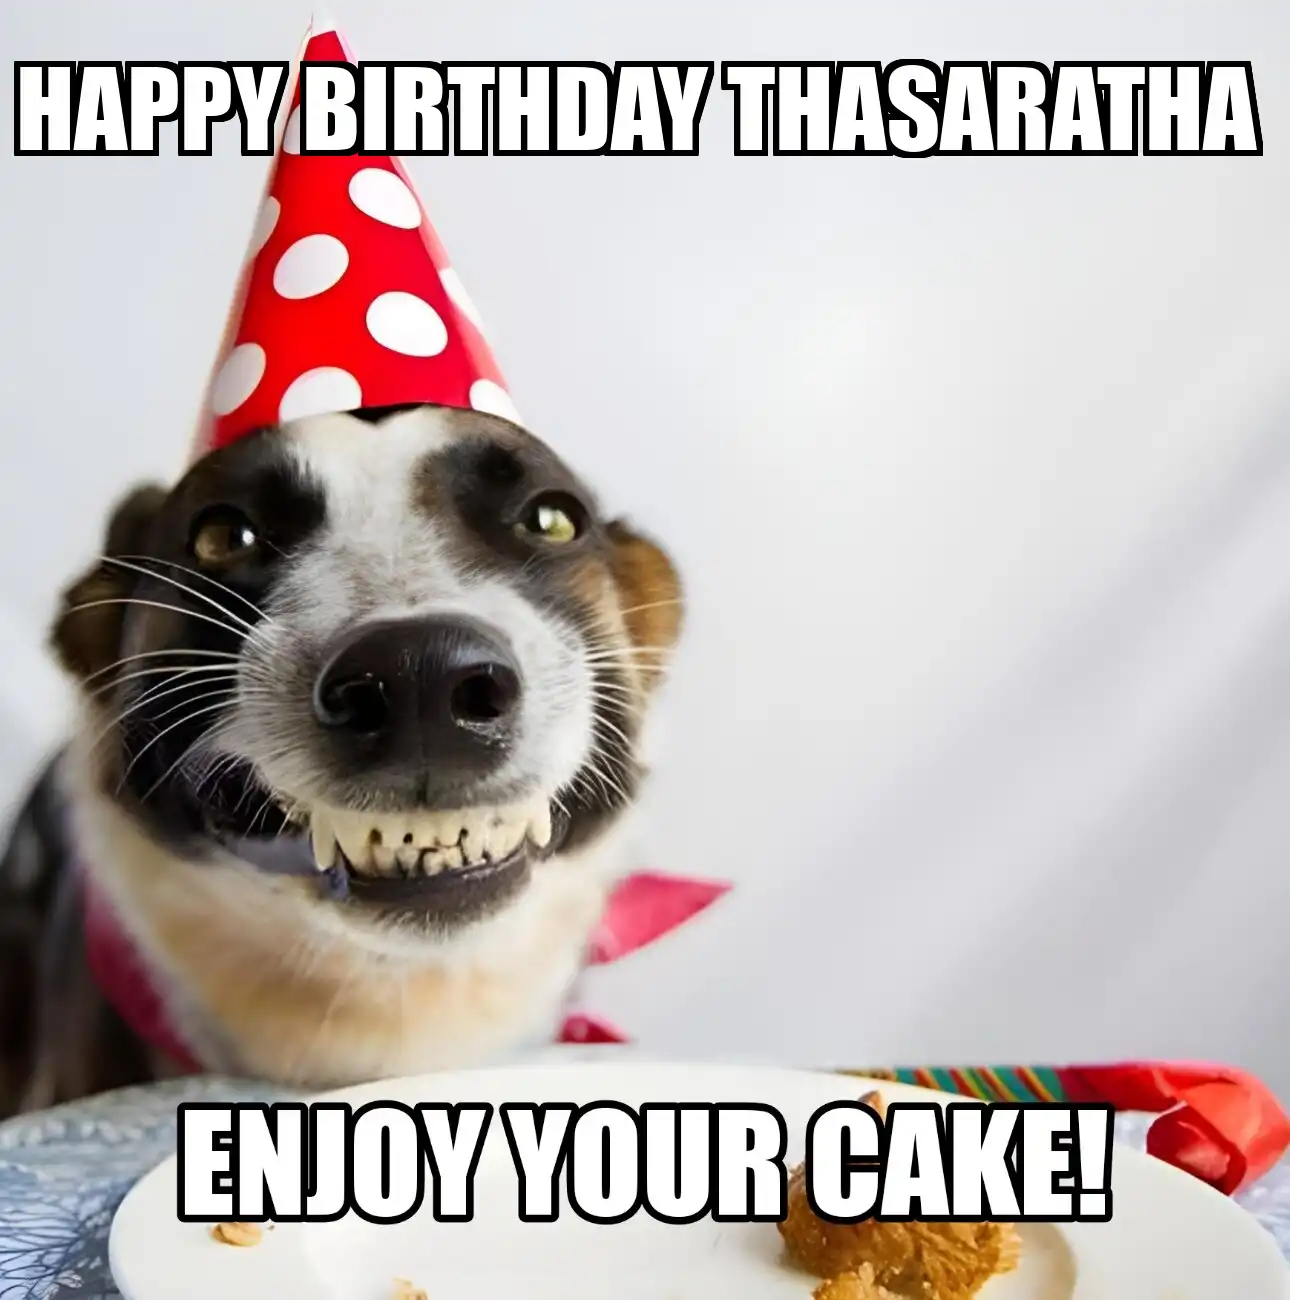 Happy Birthday Thasaratha Enjoy Your Cake Dog Meme